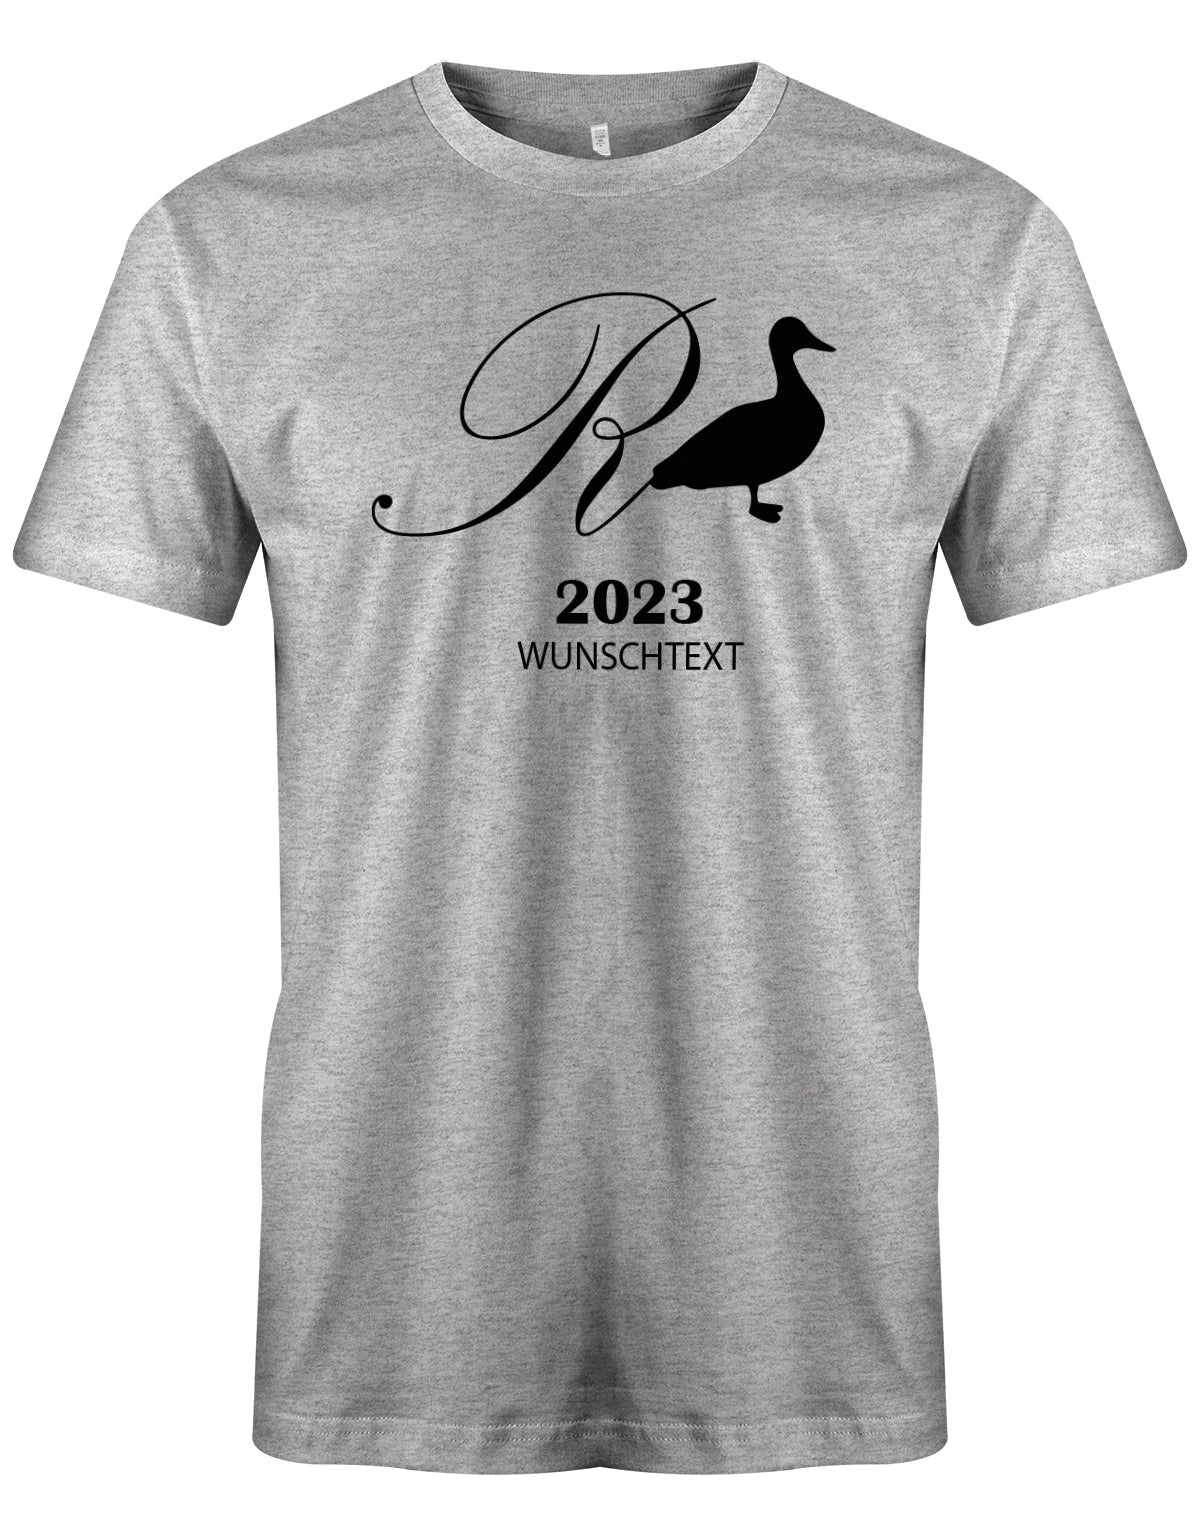 Rente Ente 2023 mit Wunschtext - Männer T-Shirt